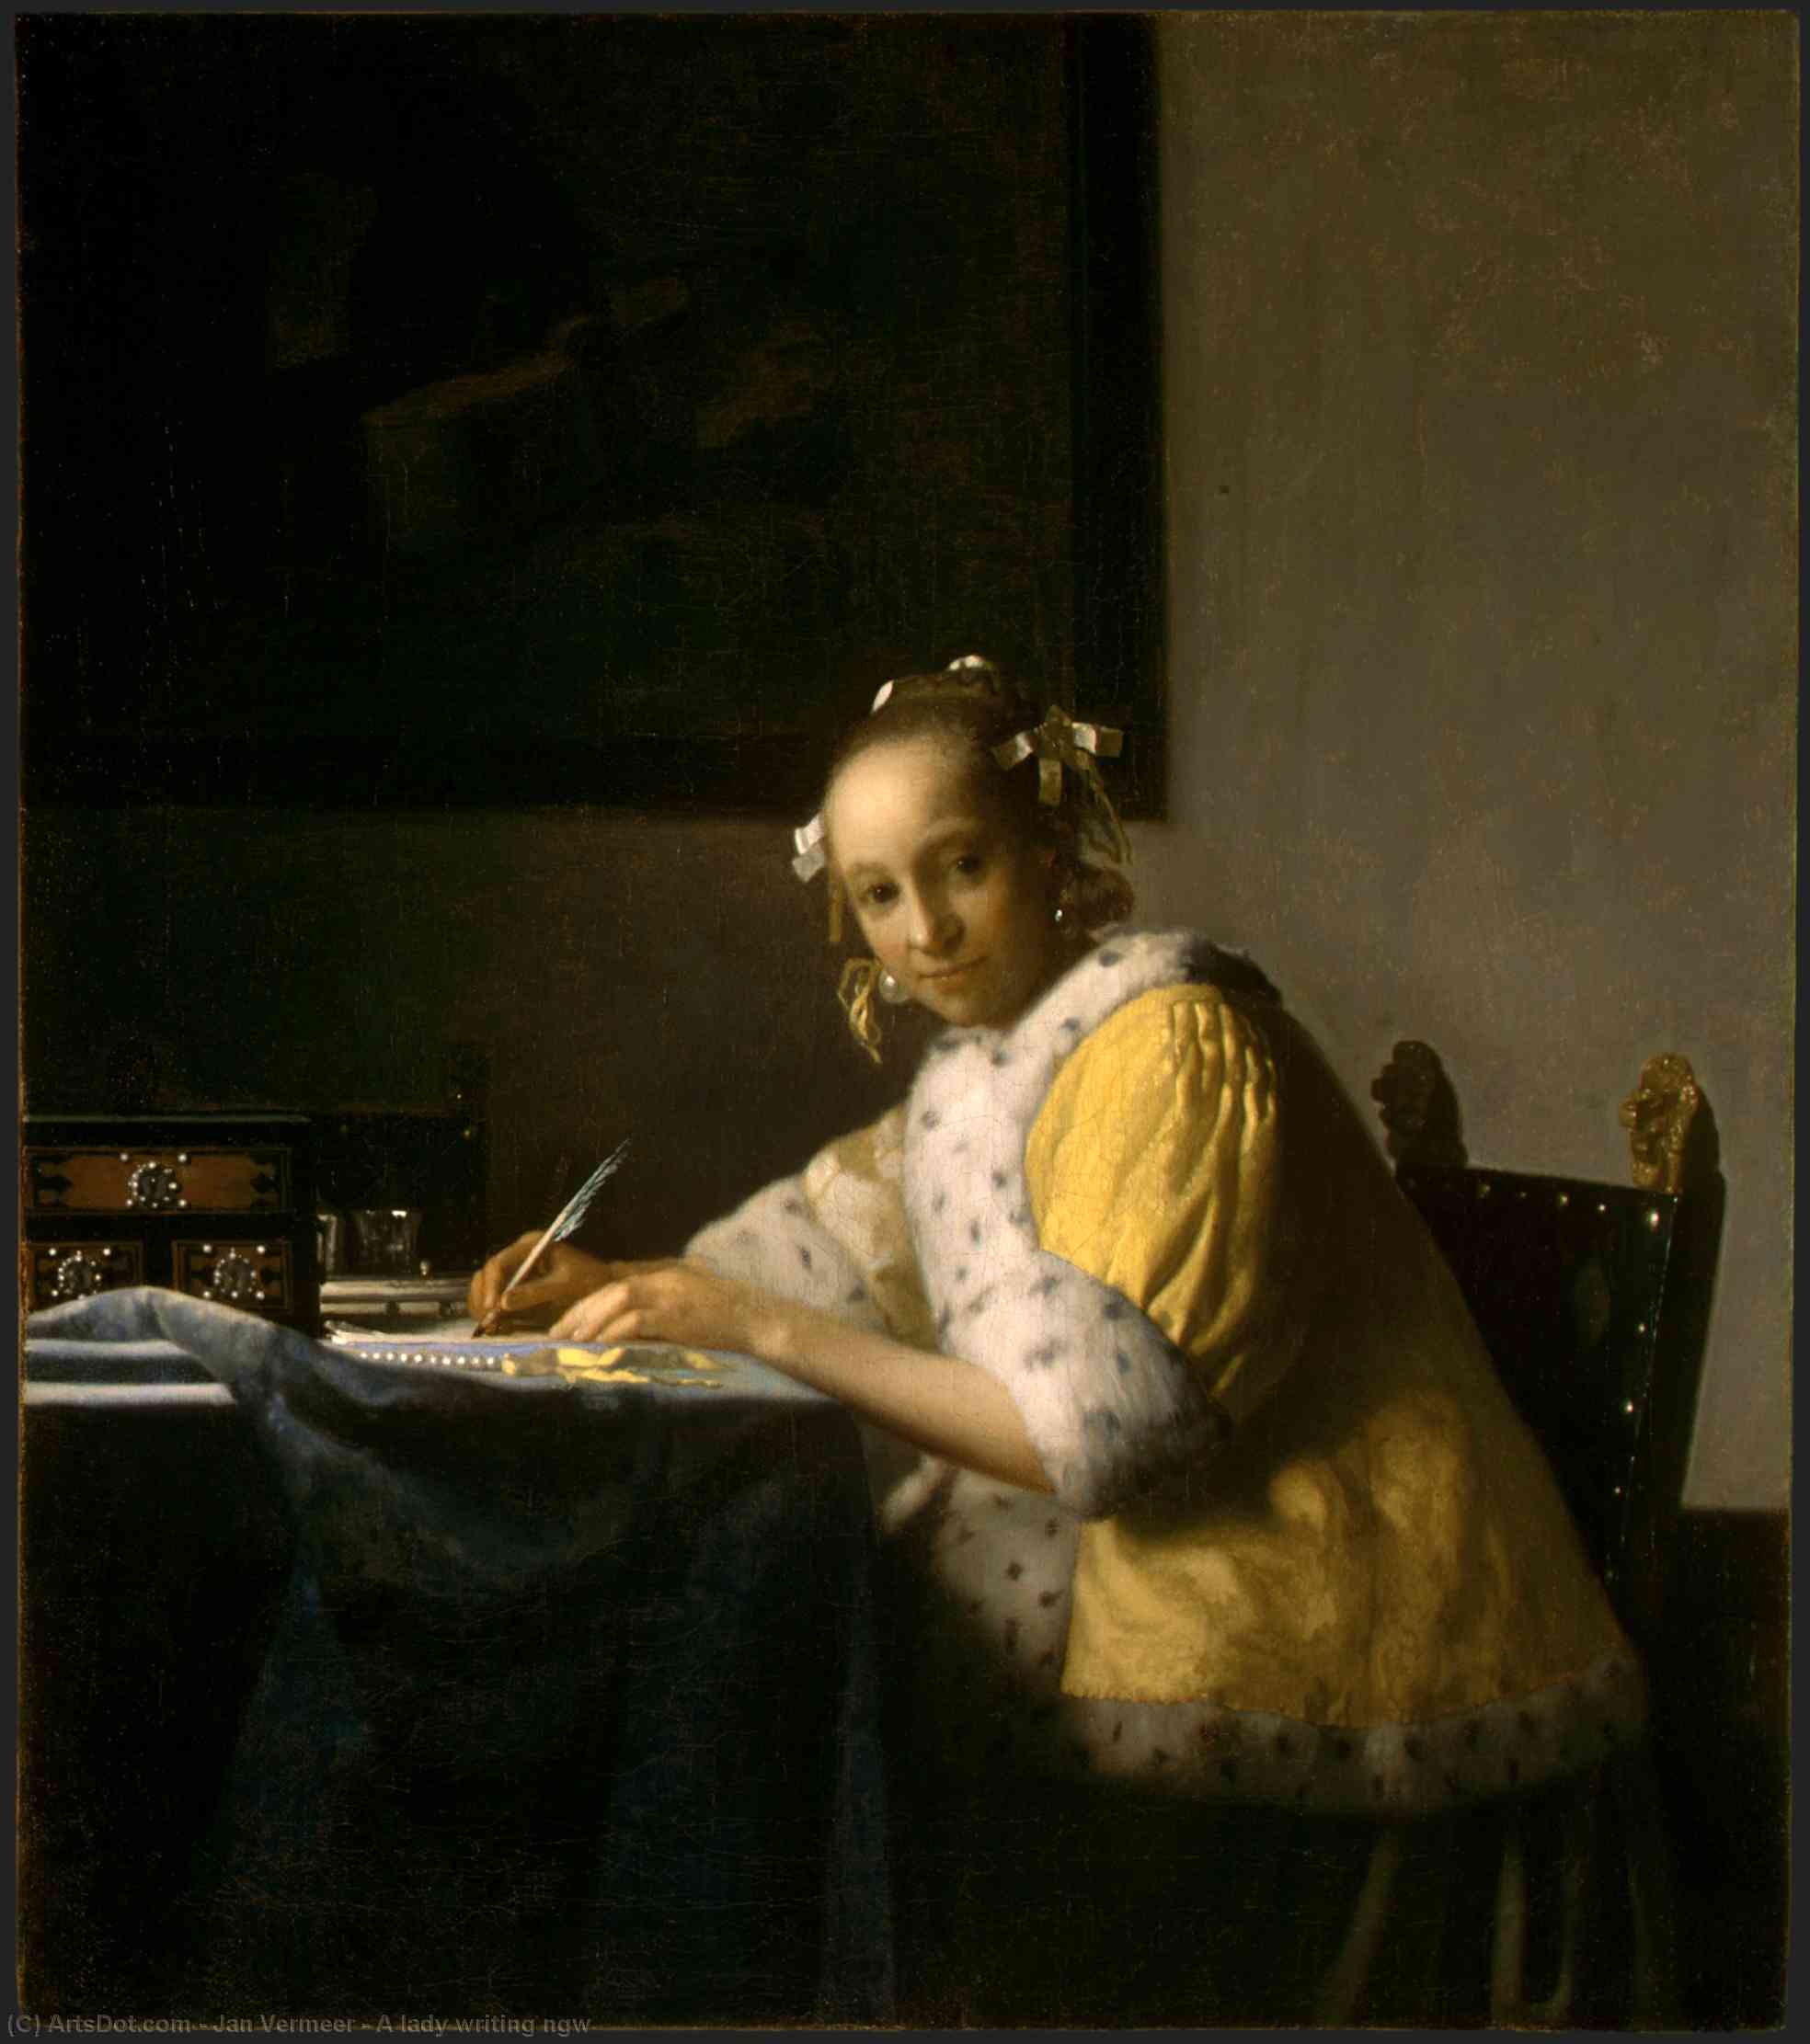 WikiOO.org - Enciclopédia das Belas Artes - Pintura, Arte por Jan Vermeer - A lady writing ngw